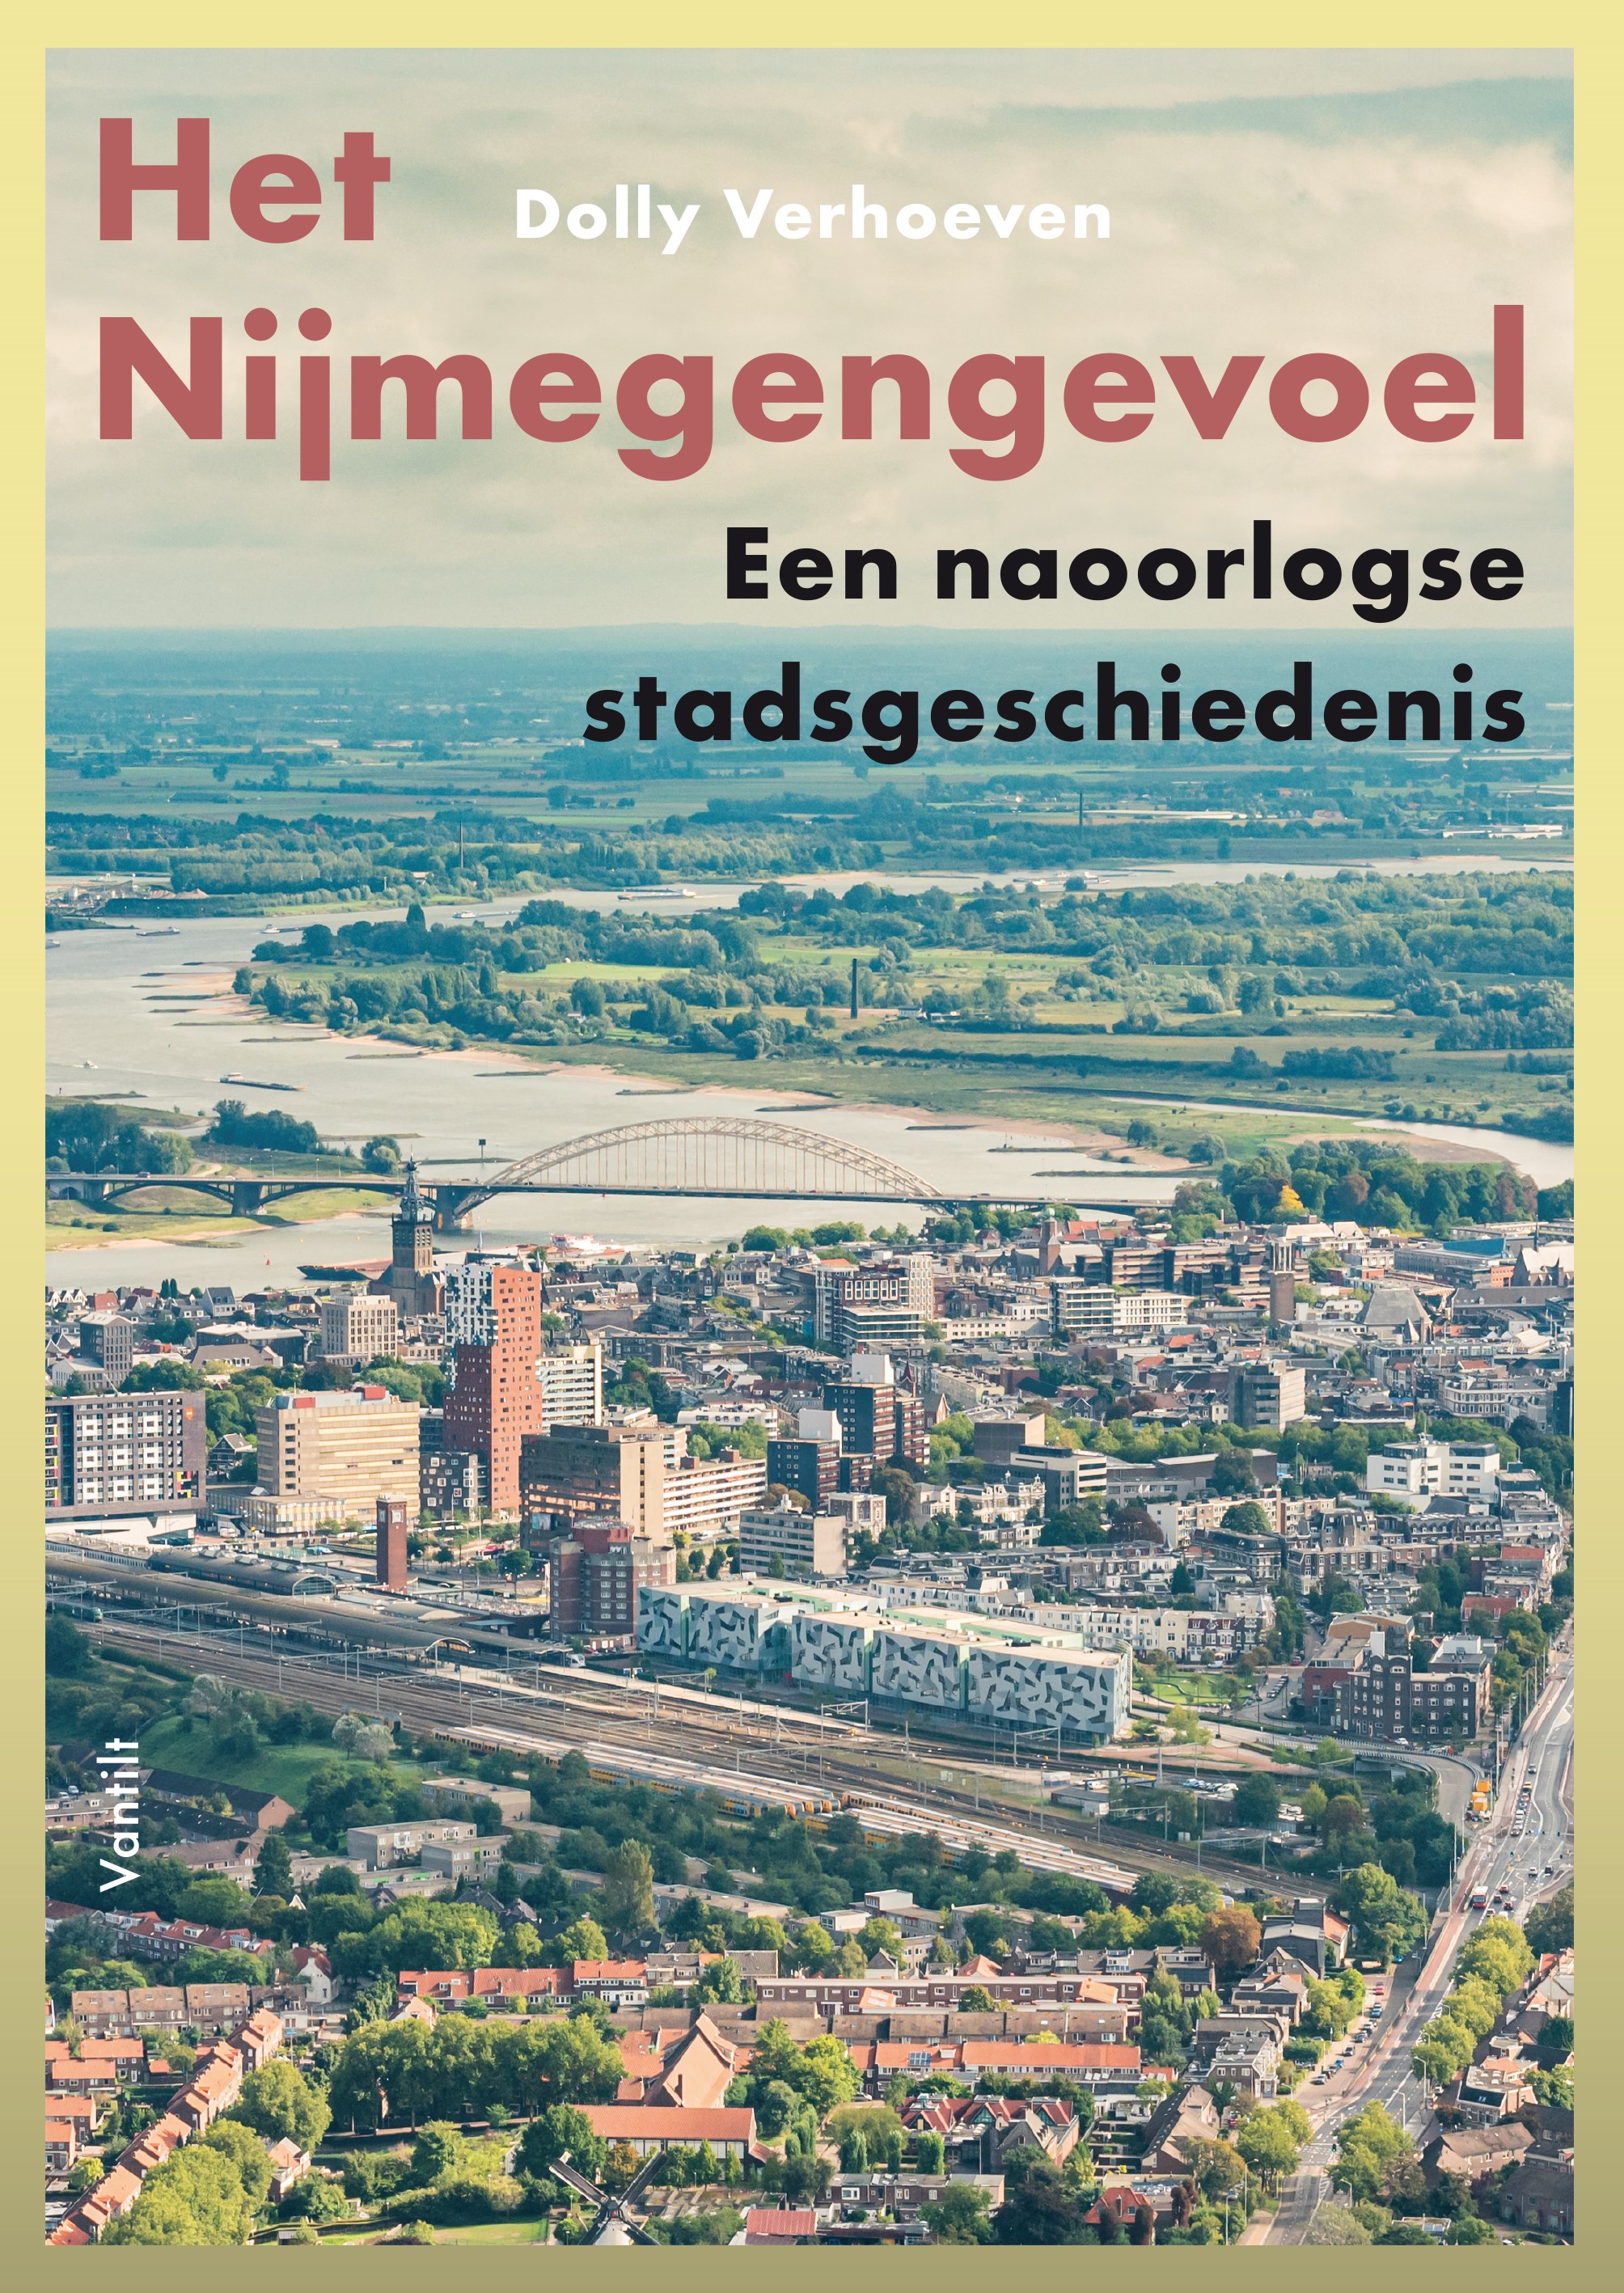 Het Nijmegengevoel